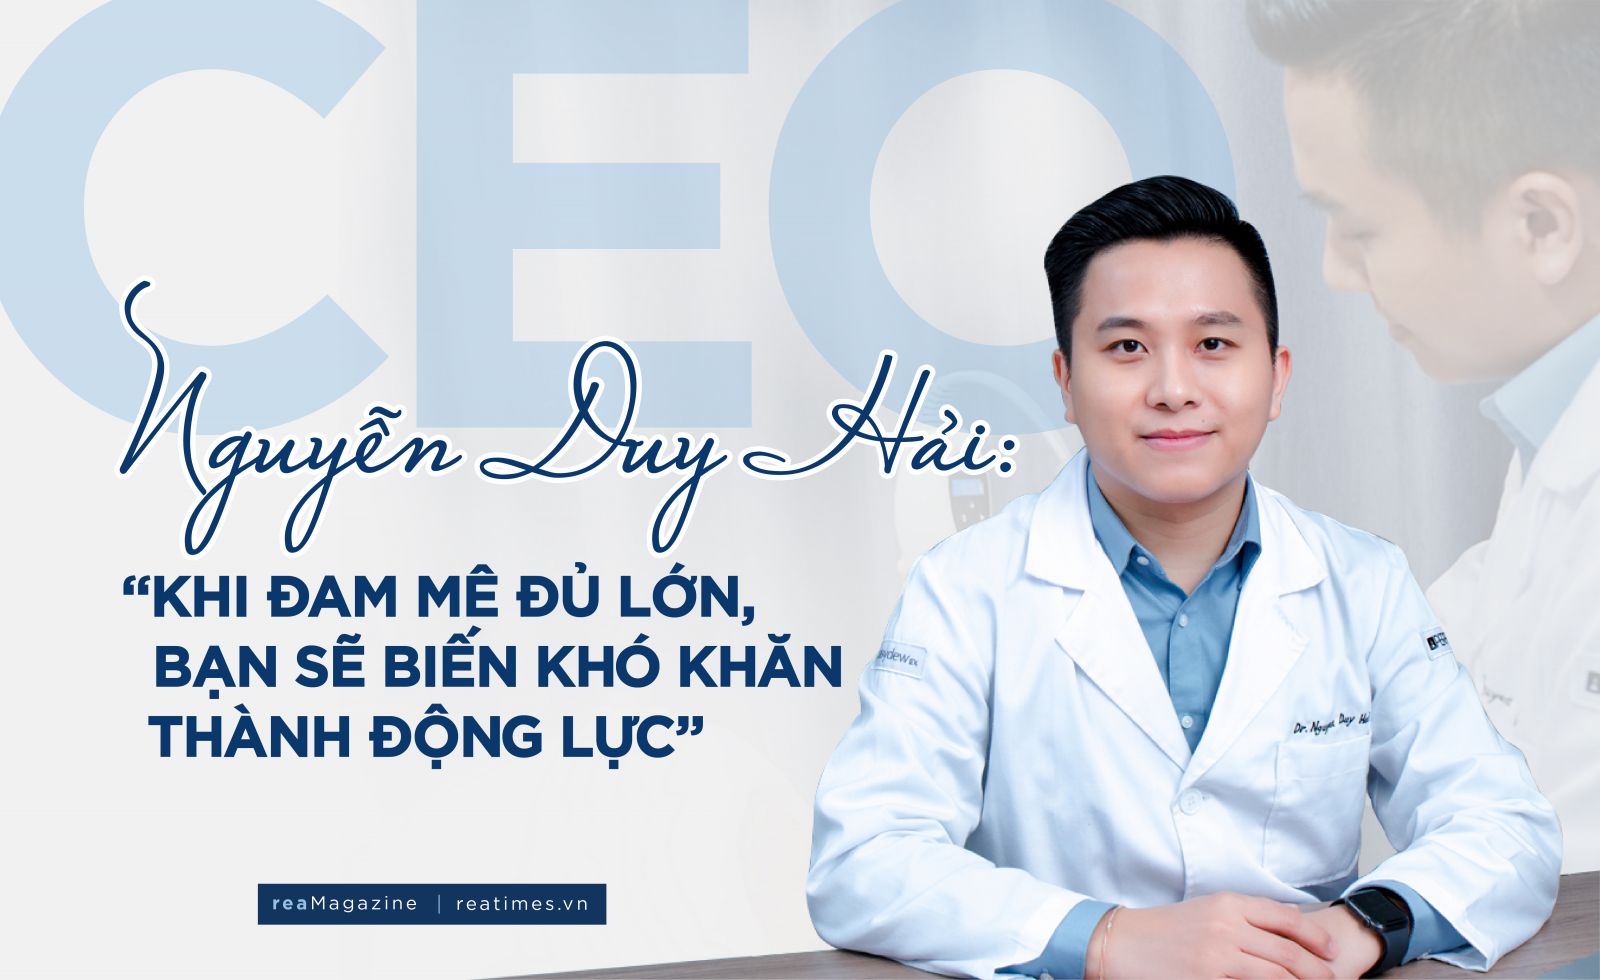 CEO Nguyễn Duy Hải: “Khi đam mê đủ lớn, bạn sẽ biến khó khăn thành động lực“